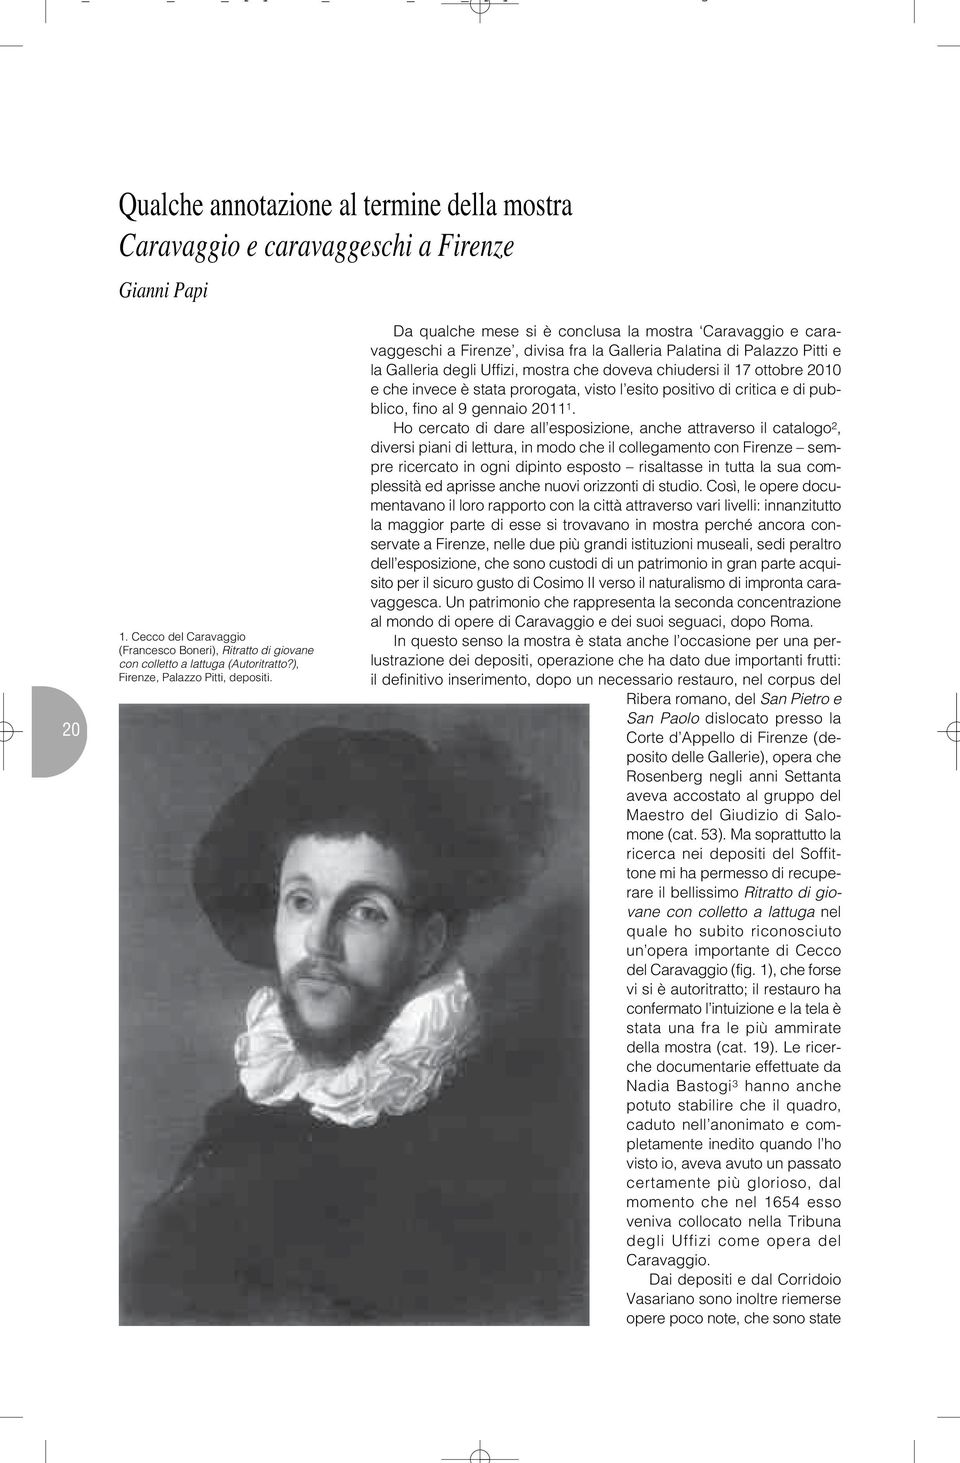 Da qualche mese si è conclusa la mostra Caravaggio e caravaggeschi a Firenze, divisa fra la Galleria Palatina di Palazzo Pitti e la Galleria degli Uffizi, mostra che doveva chiudersi il 17 ottobre